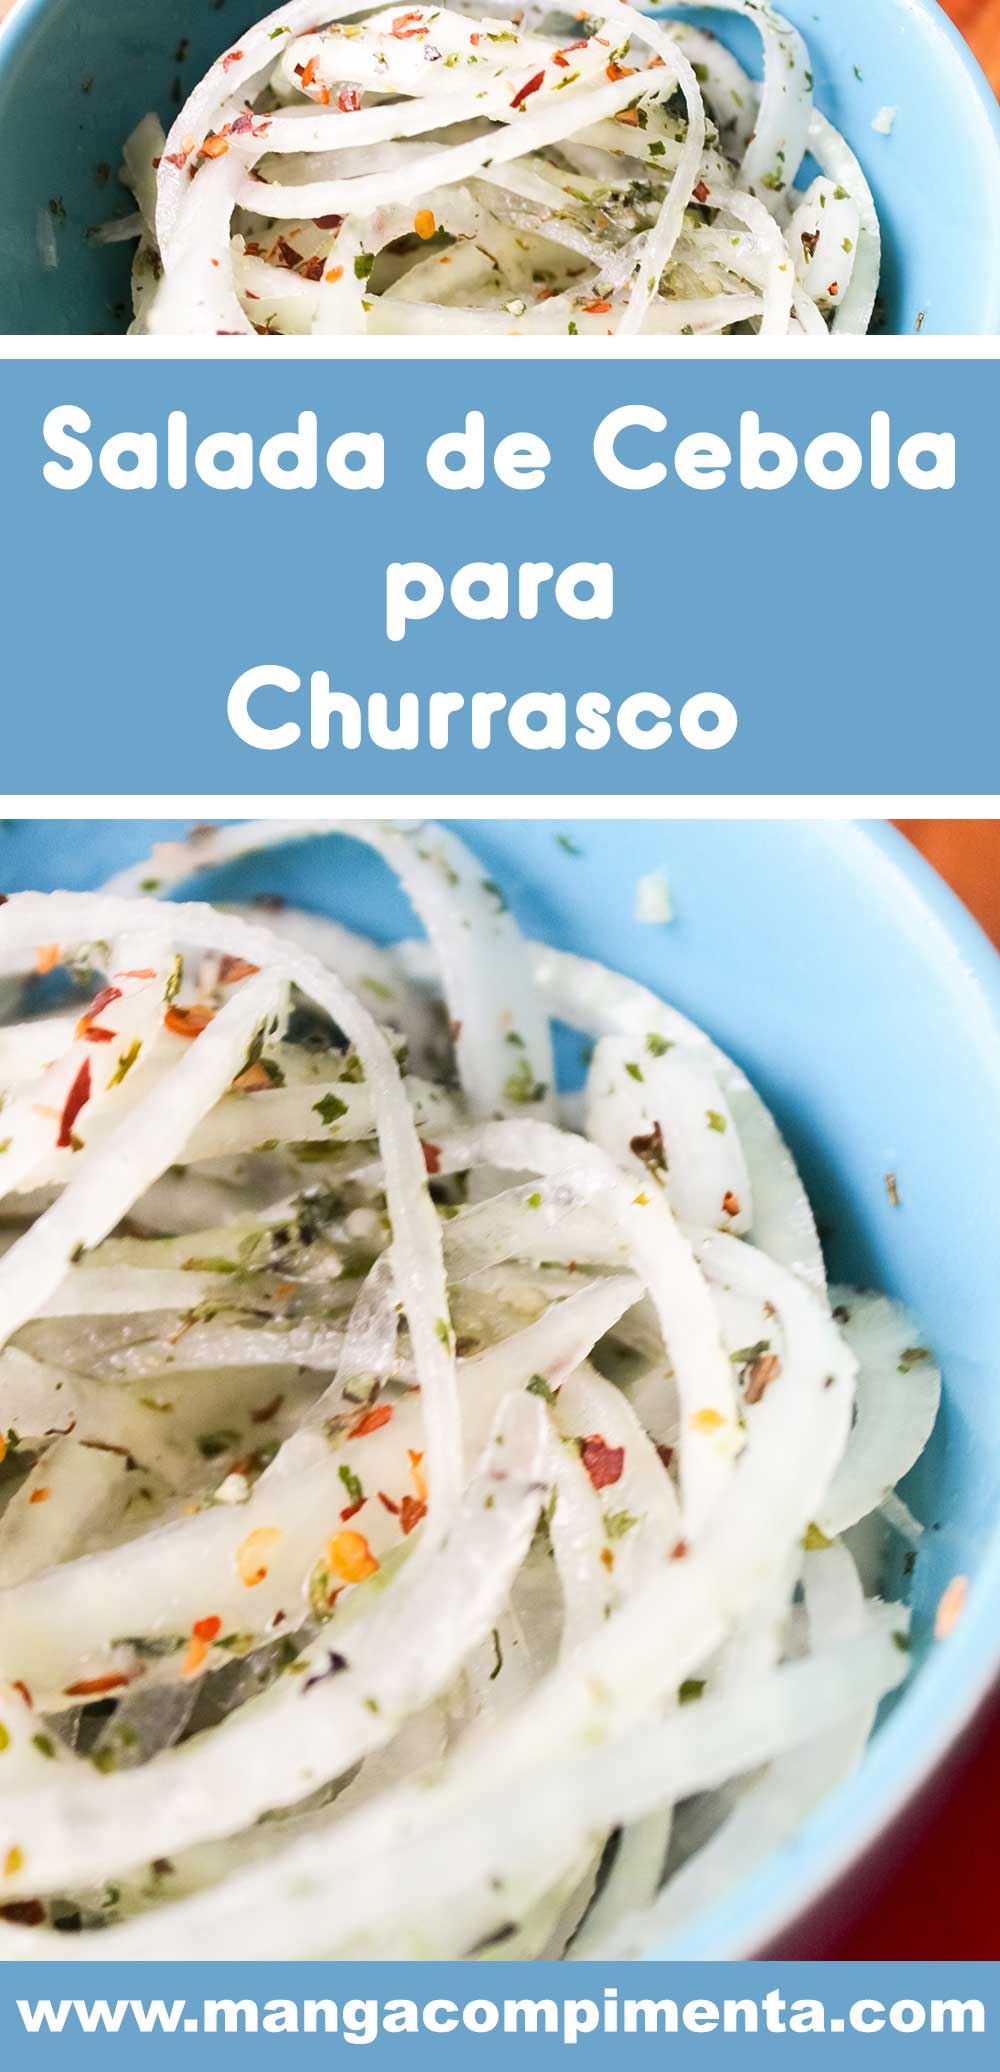 Receita de Salada de Cebola para Churrasco - para curtir o verão e carnaval!